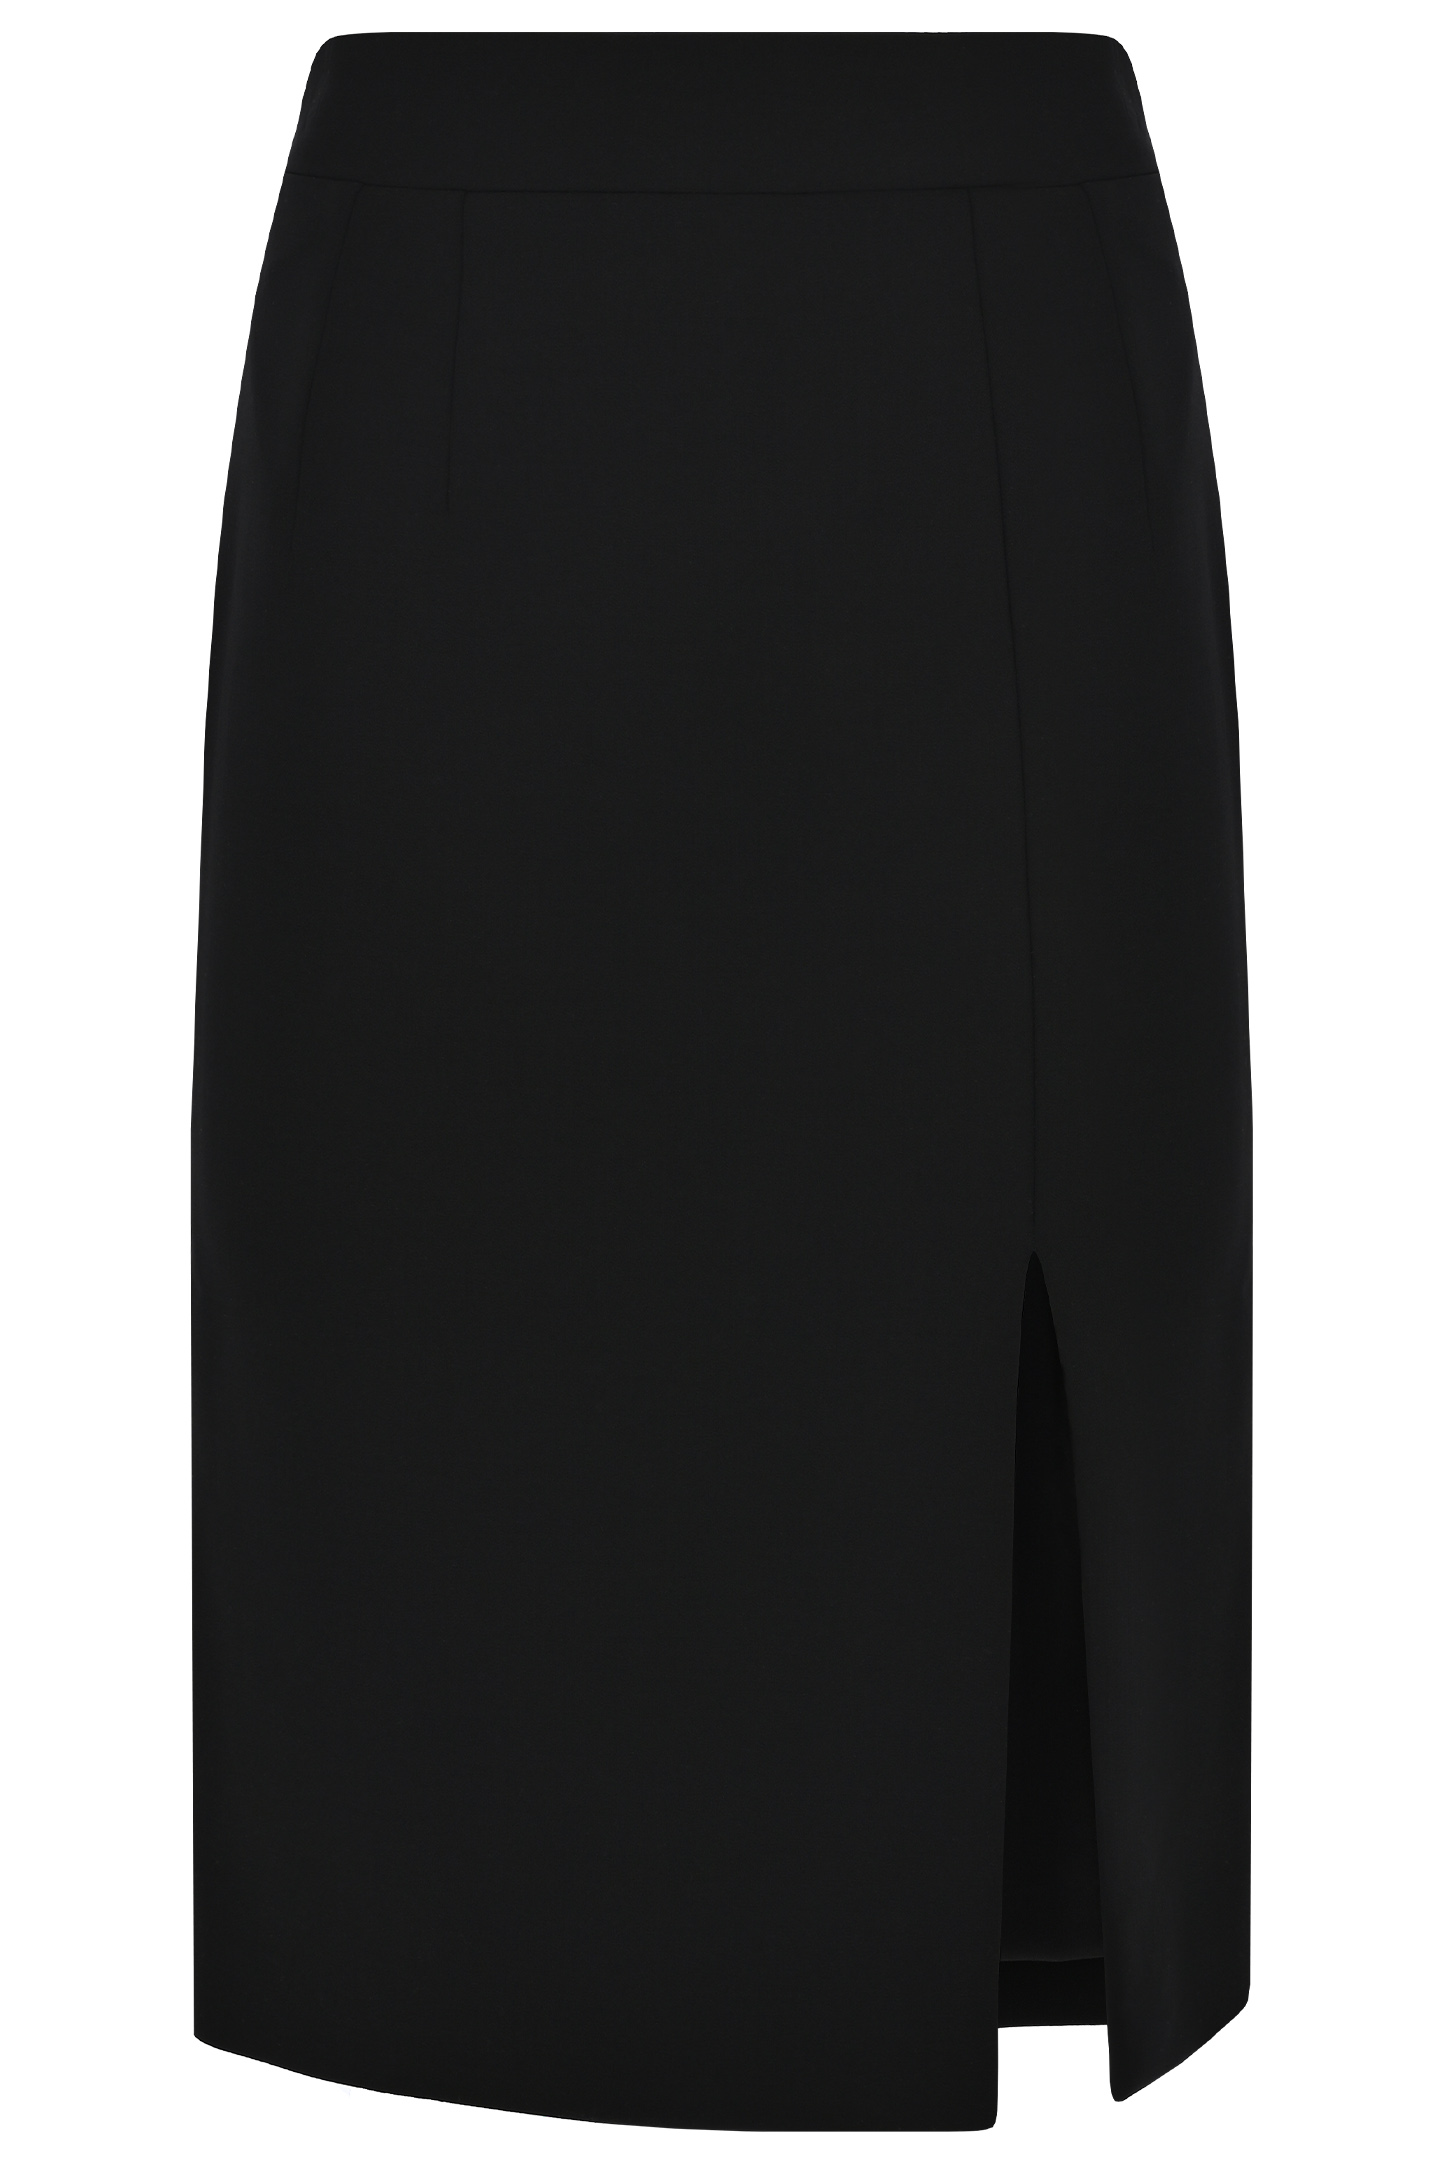 Классическая юбка с вырезом DOLCE & GABBANA F4CU7T FUBF1, цвет: Черный, Женский